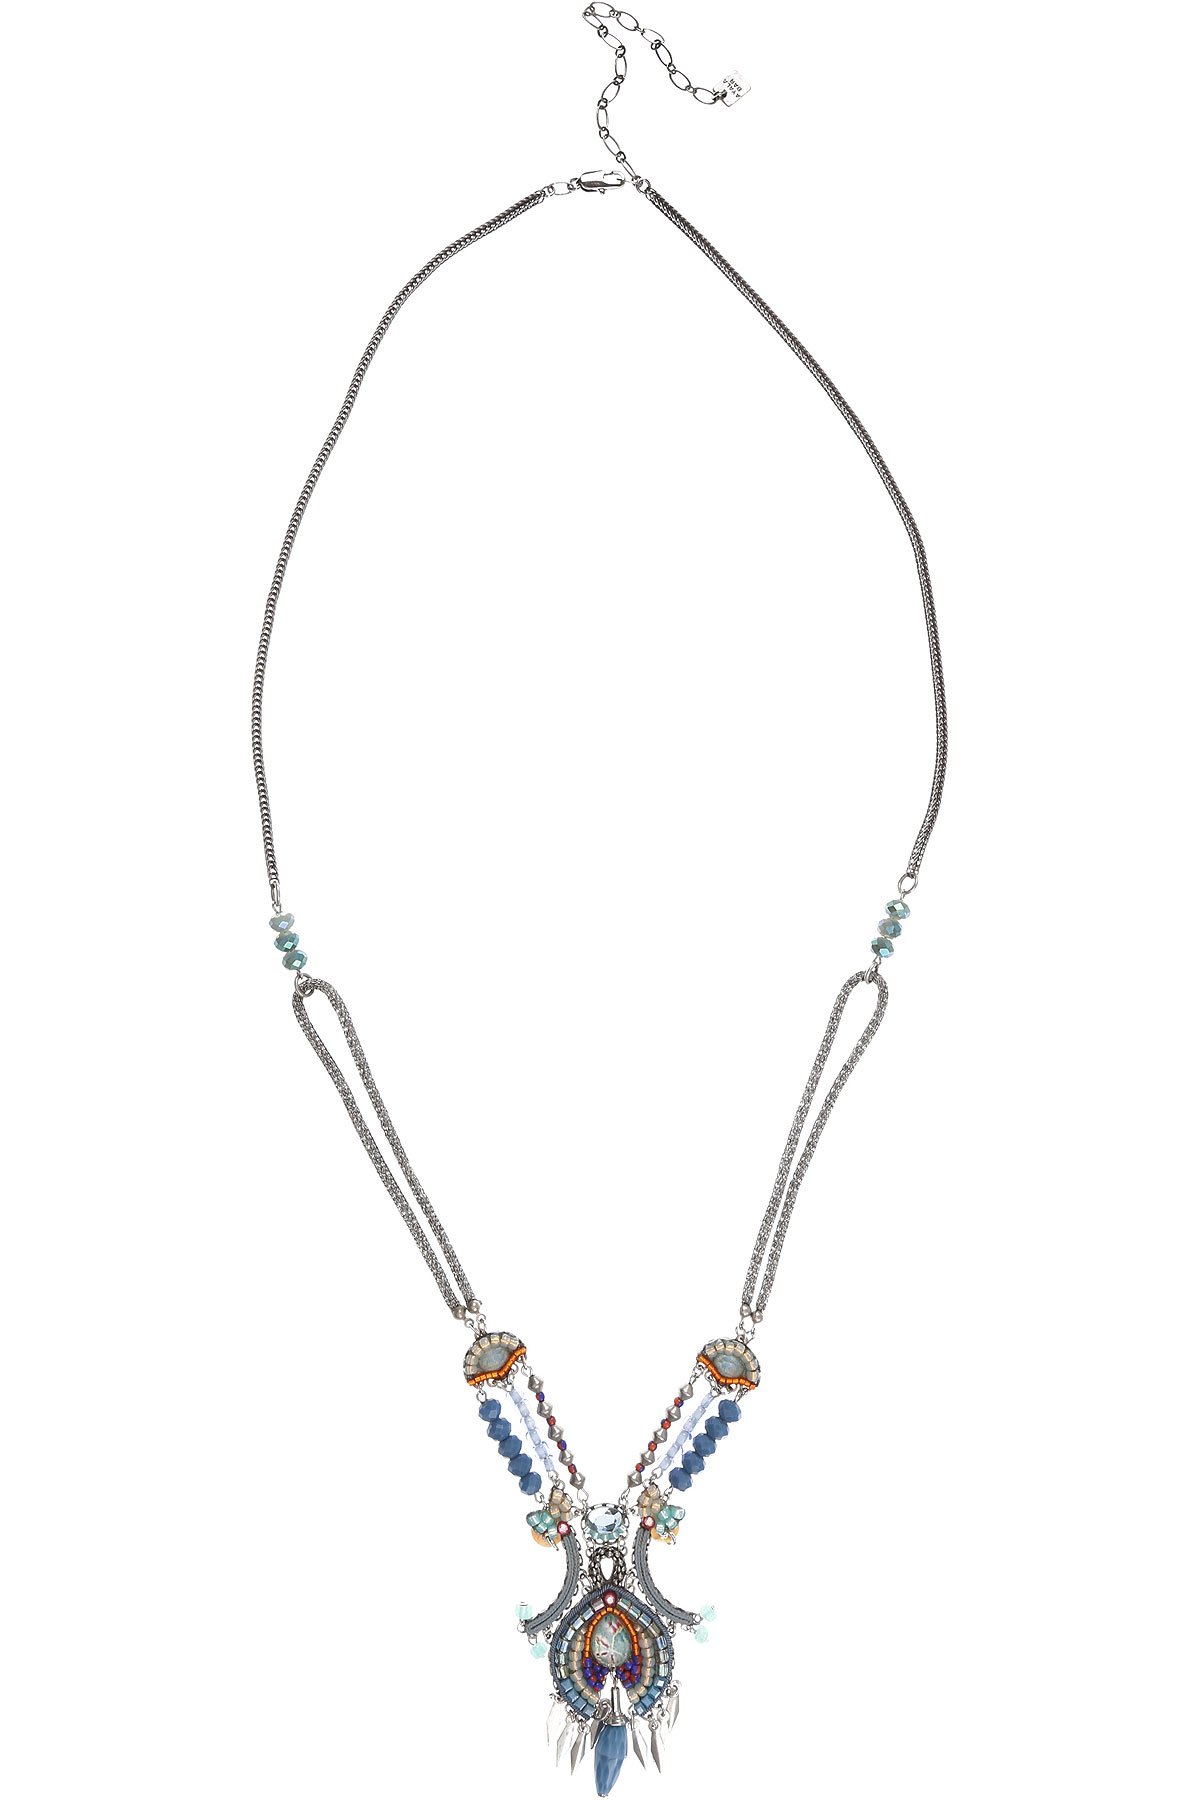 Ayala Bar Halskette für Damen Günstig im Sale, Azur-Blau, Versilbert, 2017